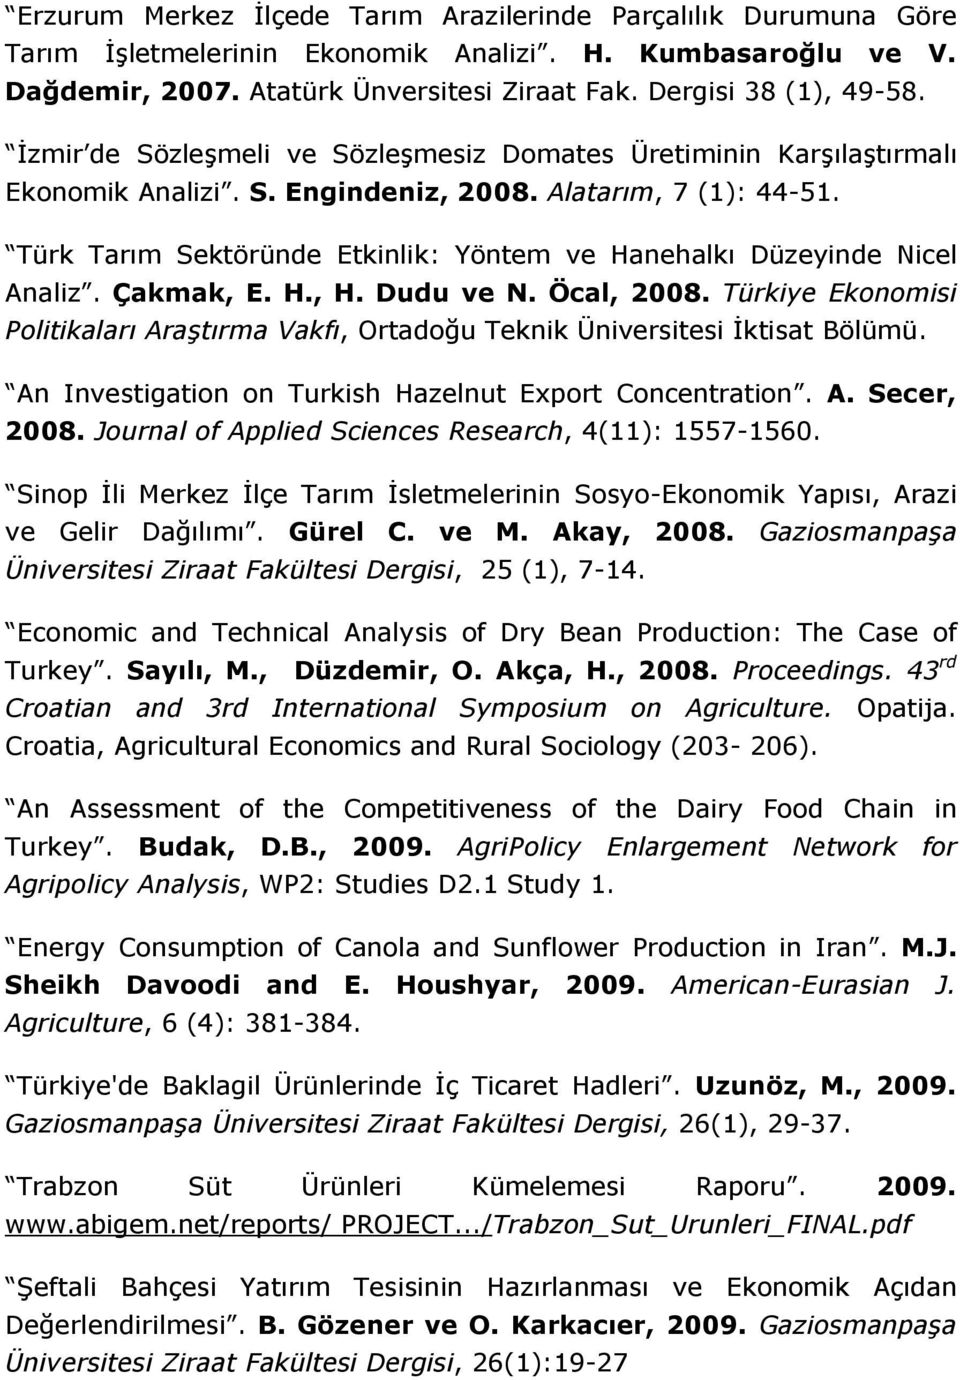 Türk Tarım Sektöründe Etkinlik: Yöntem ve Hanehalkı Düzeyinde Nicel Analiz. Çakmak, E. H., H. Dudu ve N. Öcal, 2008.